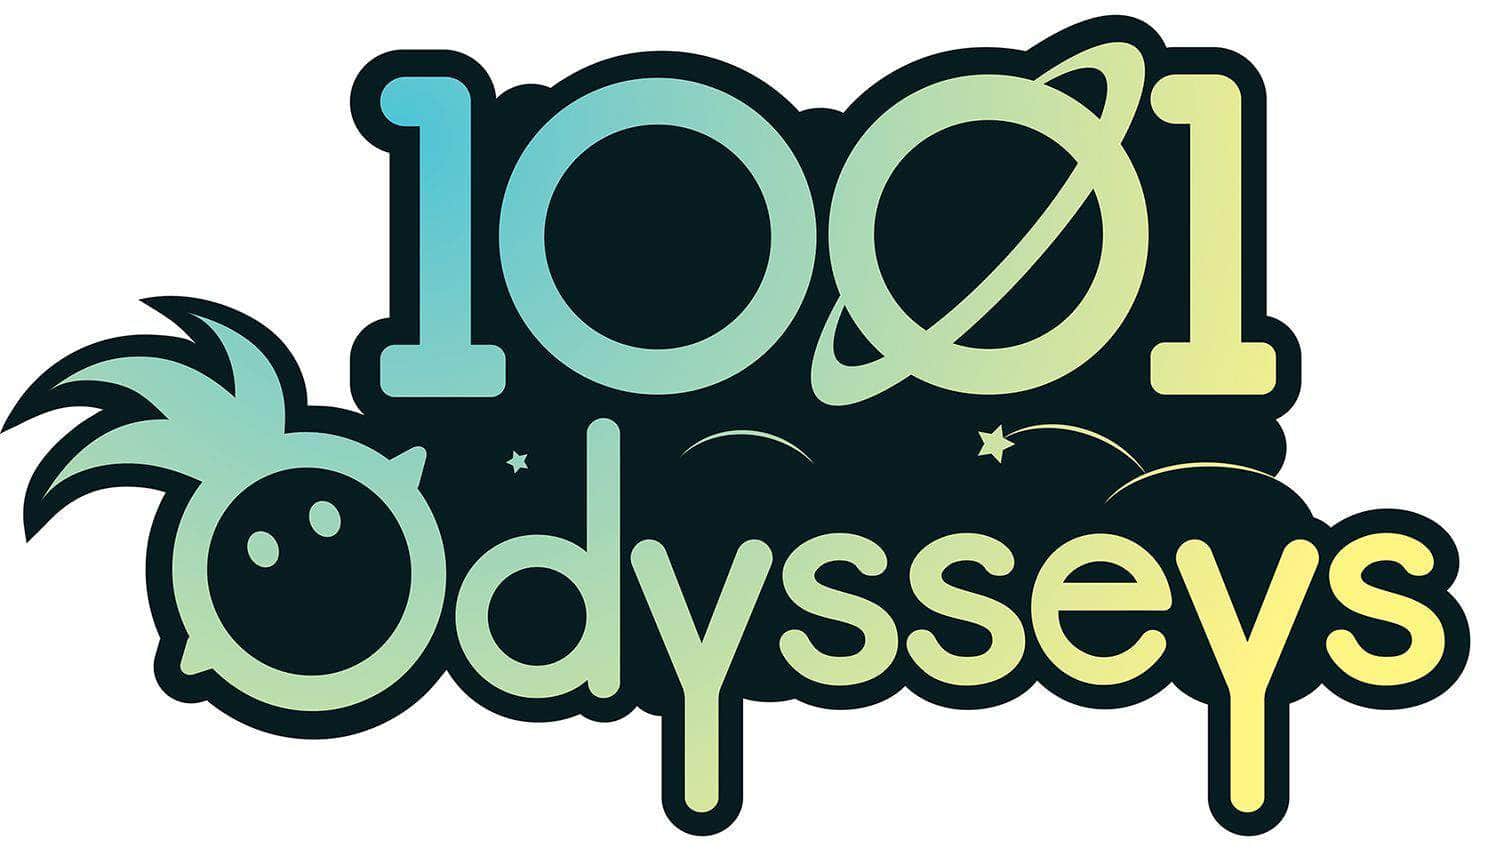 1001 Odysseys (Kickstarter Special) Kickstarter Game Asmadi Games KS800623A